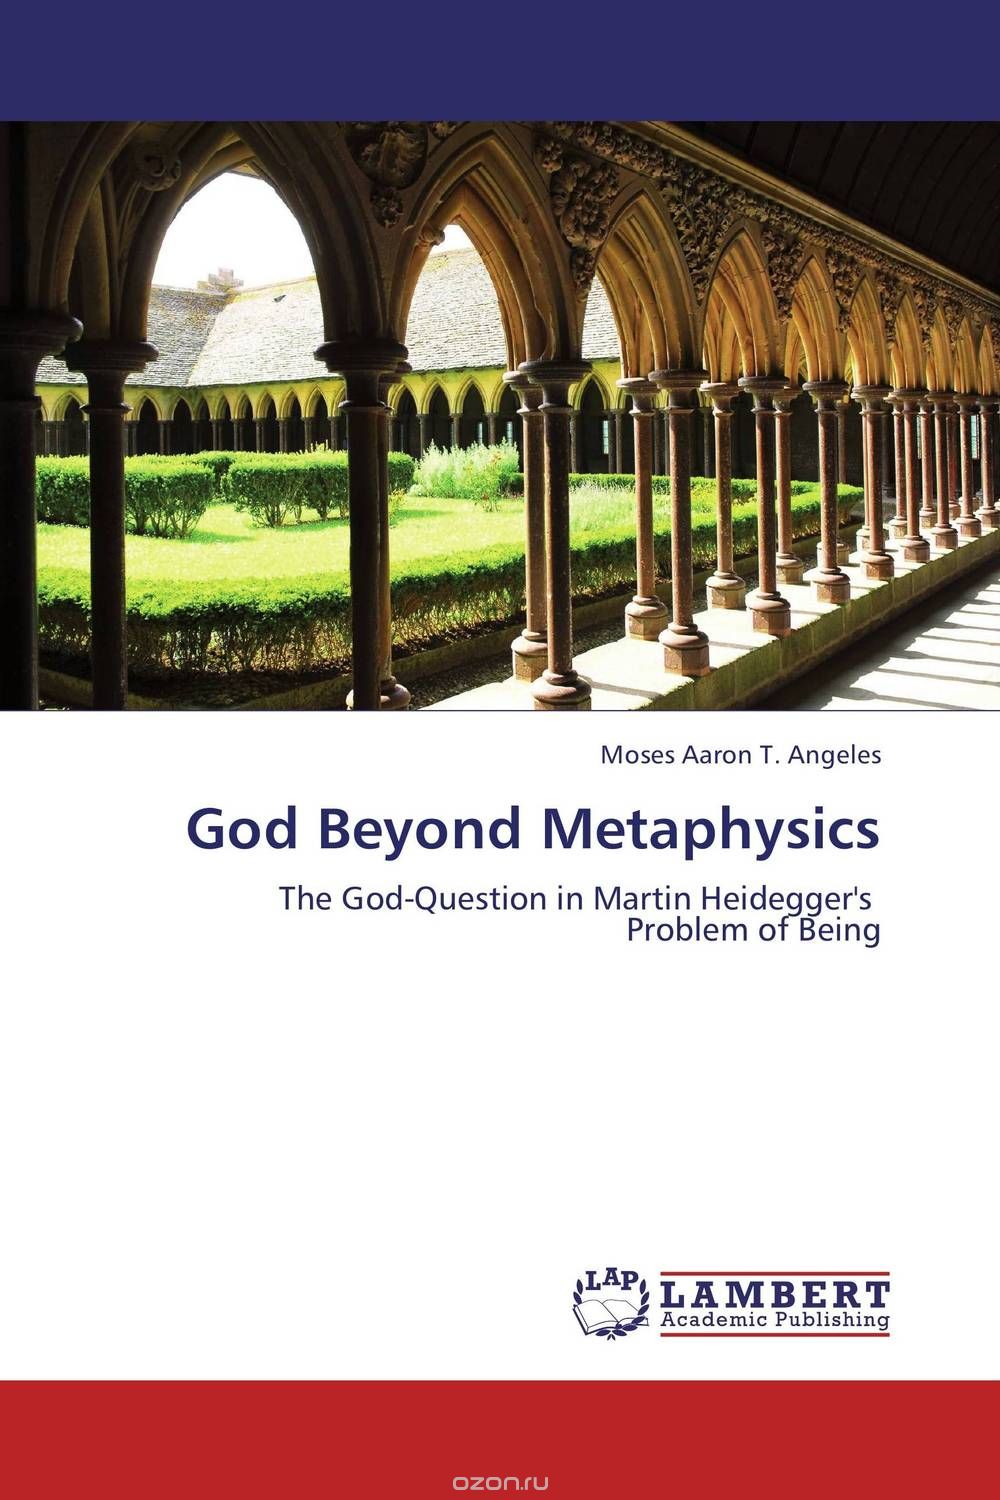 Скачать книгу "God Beyond Metaphysics"